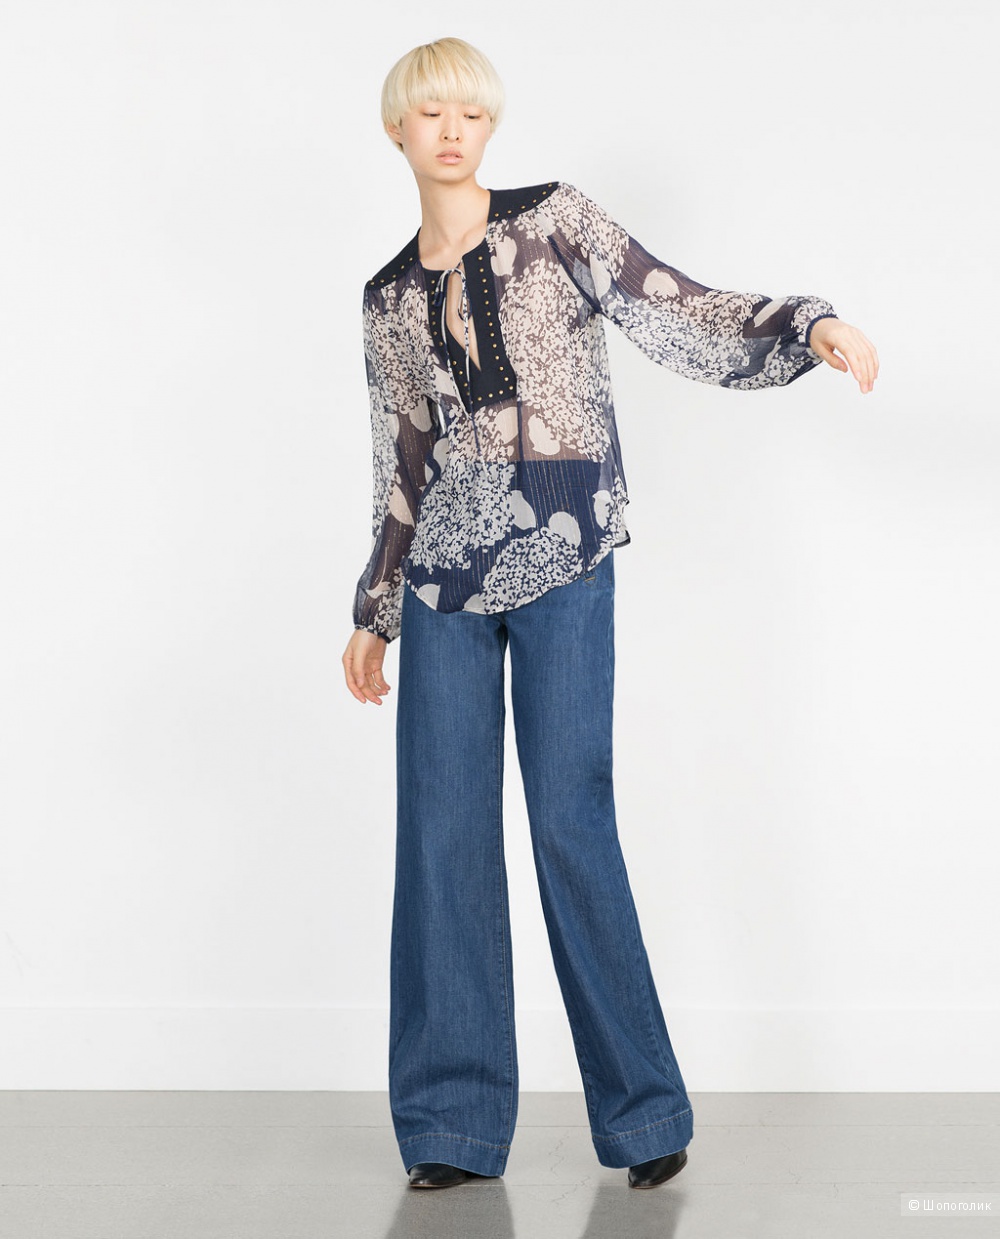 Блузка Zara 100% шелк с люрексом, размер S, новая без бирок